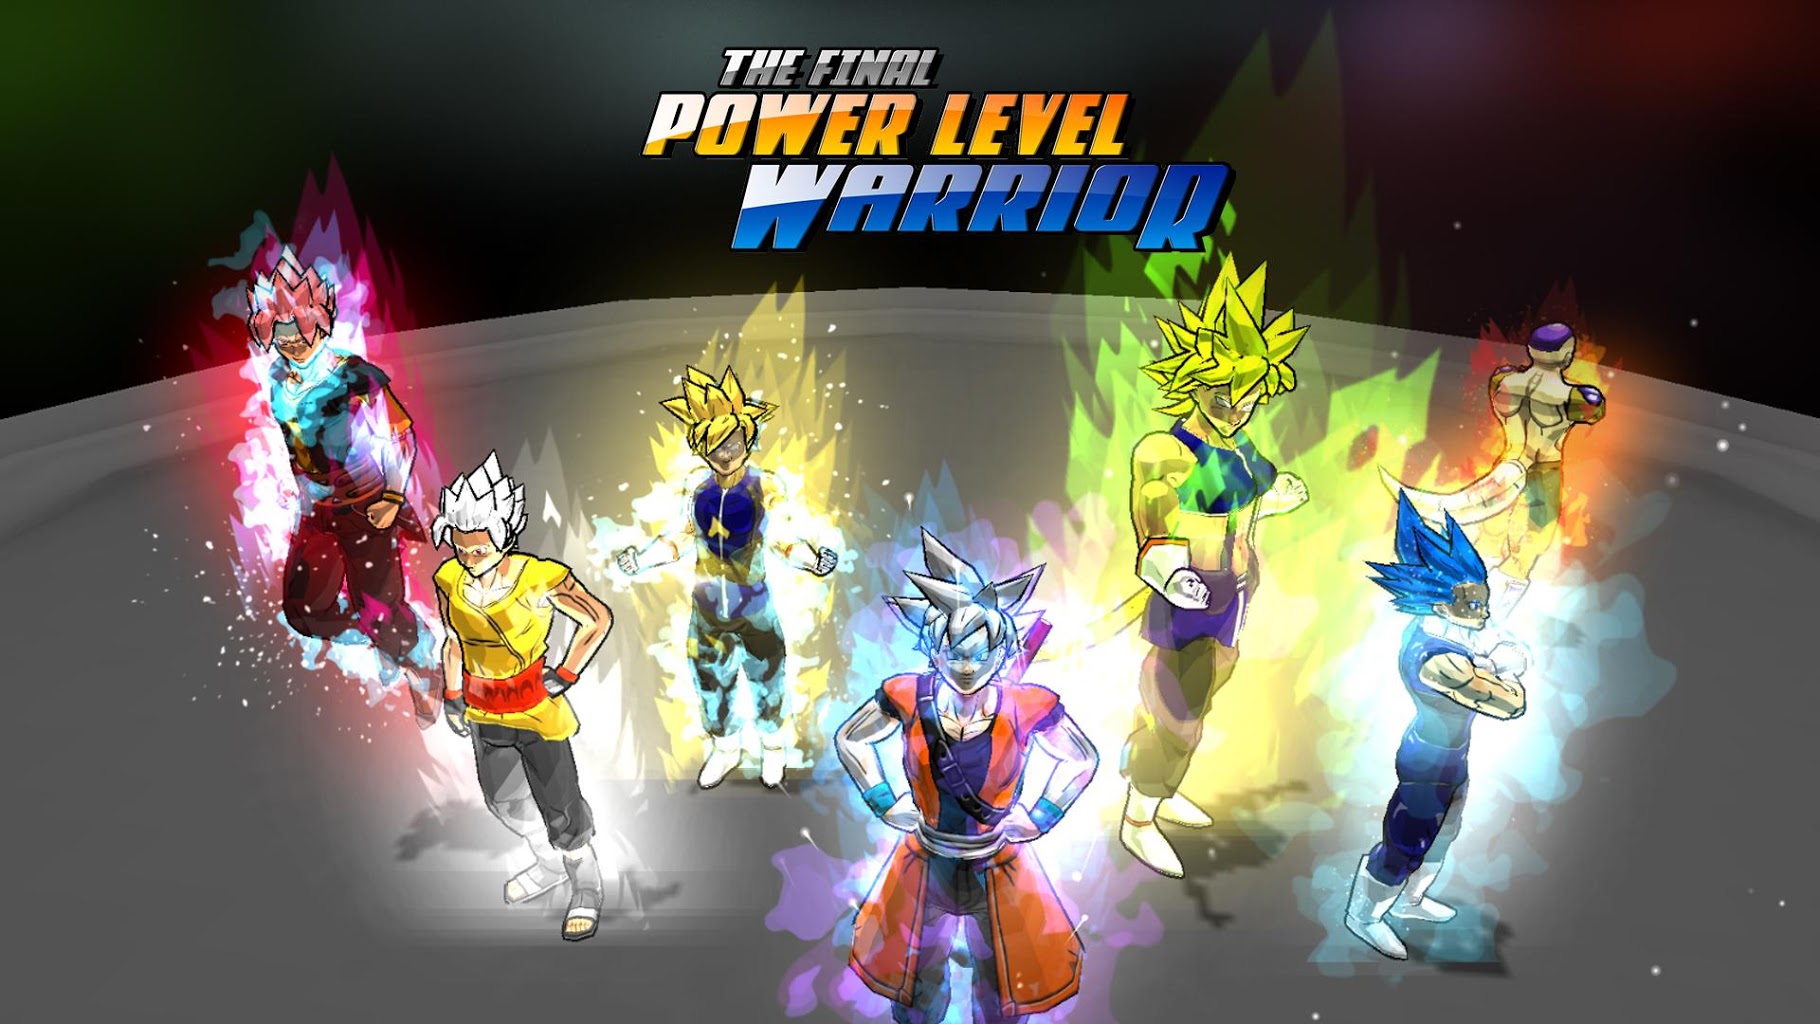 Final power. The Final Power Level Warrior. Power Levels. Games with Power Level. Dodoria Power Level.